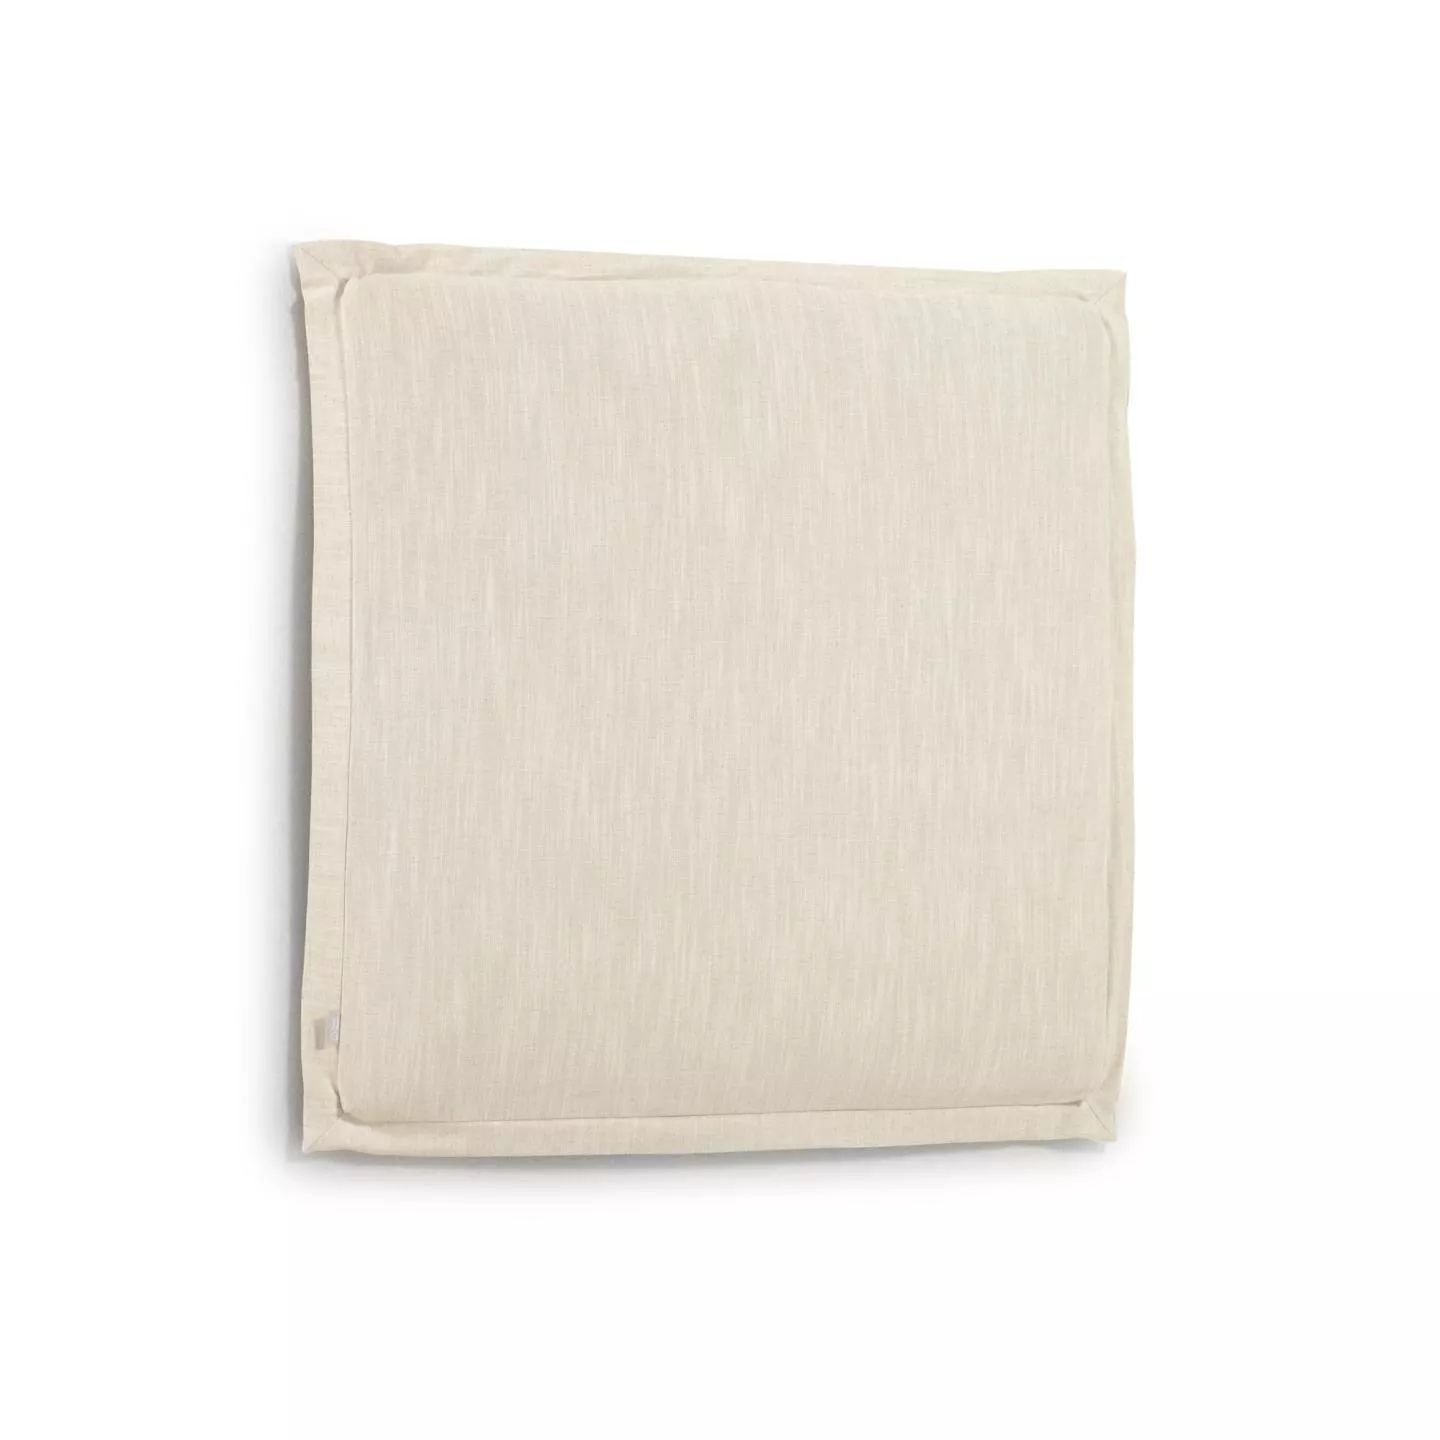 Изголовье La Forma лен белого цвета Tanit со съемным чехлом 106 x 106 см